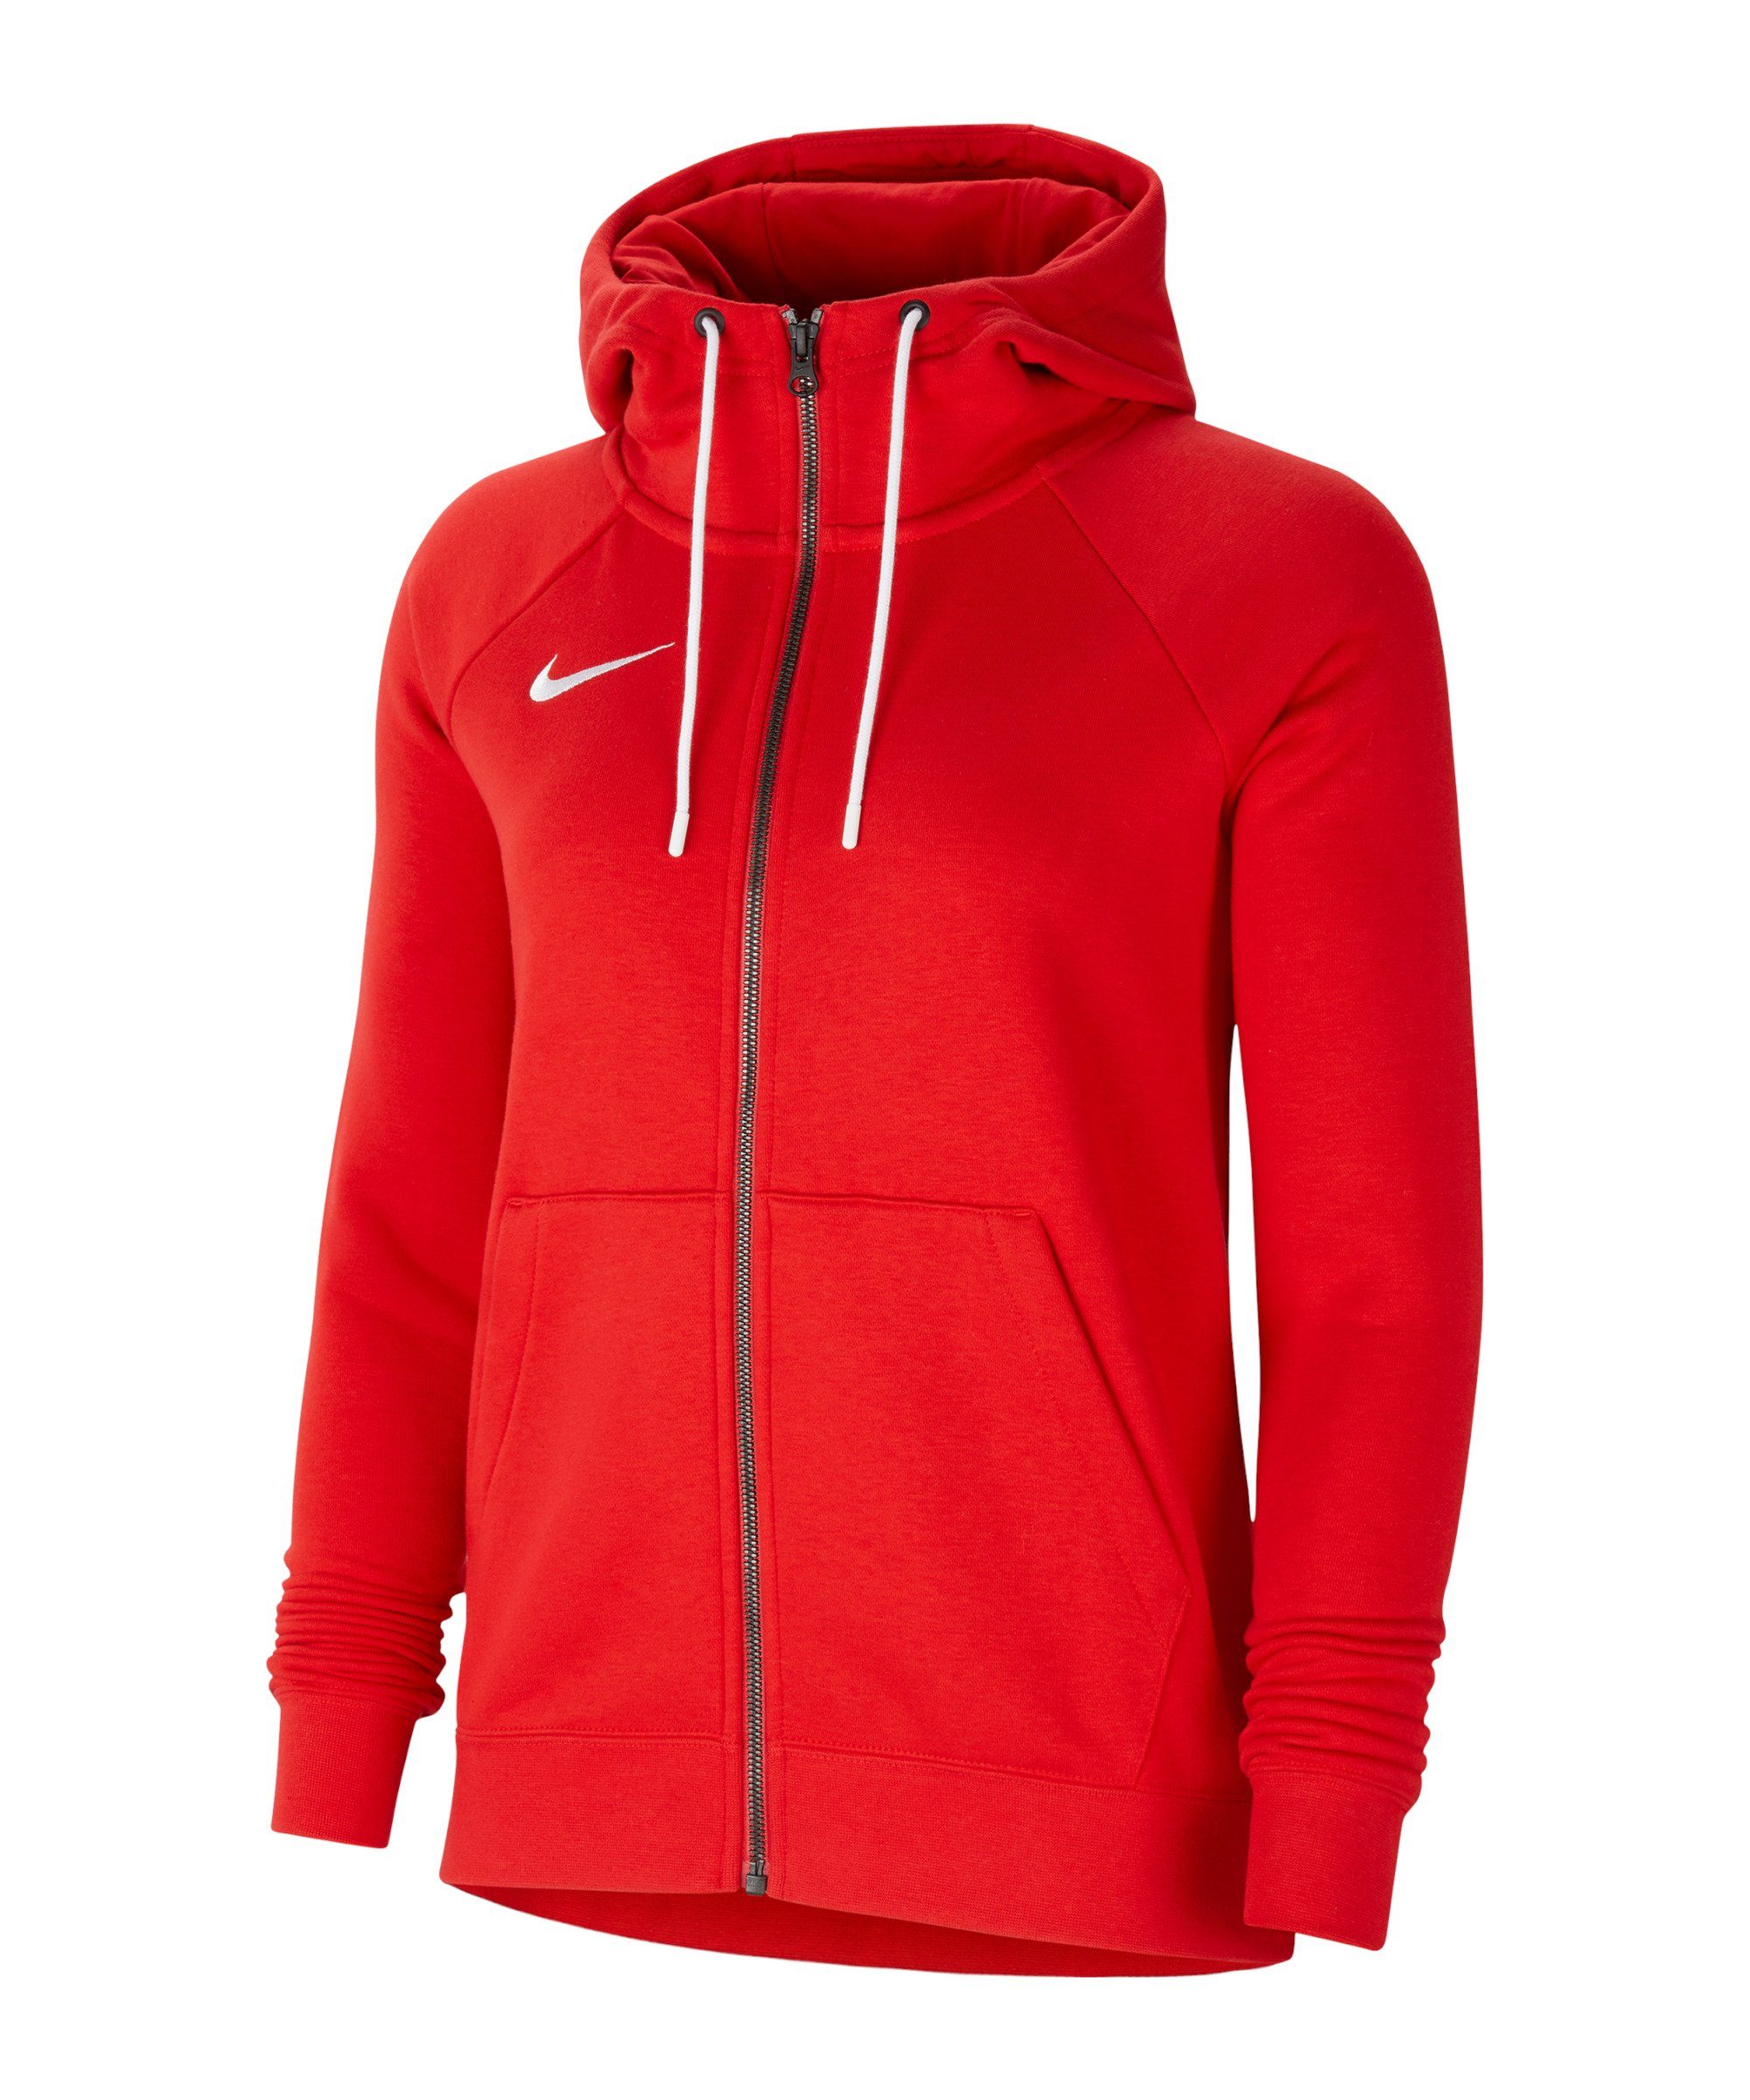 Damen rotweiss Nike Kapuzenjacke Park 20 Trainingsjacke Fleece